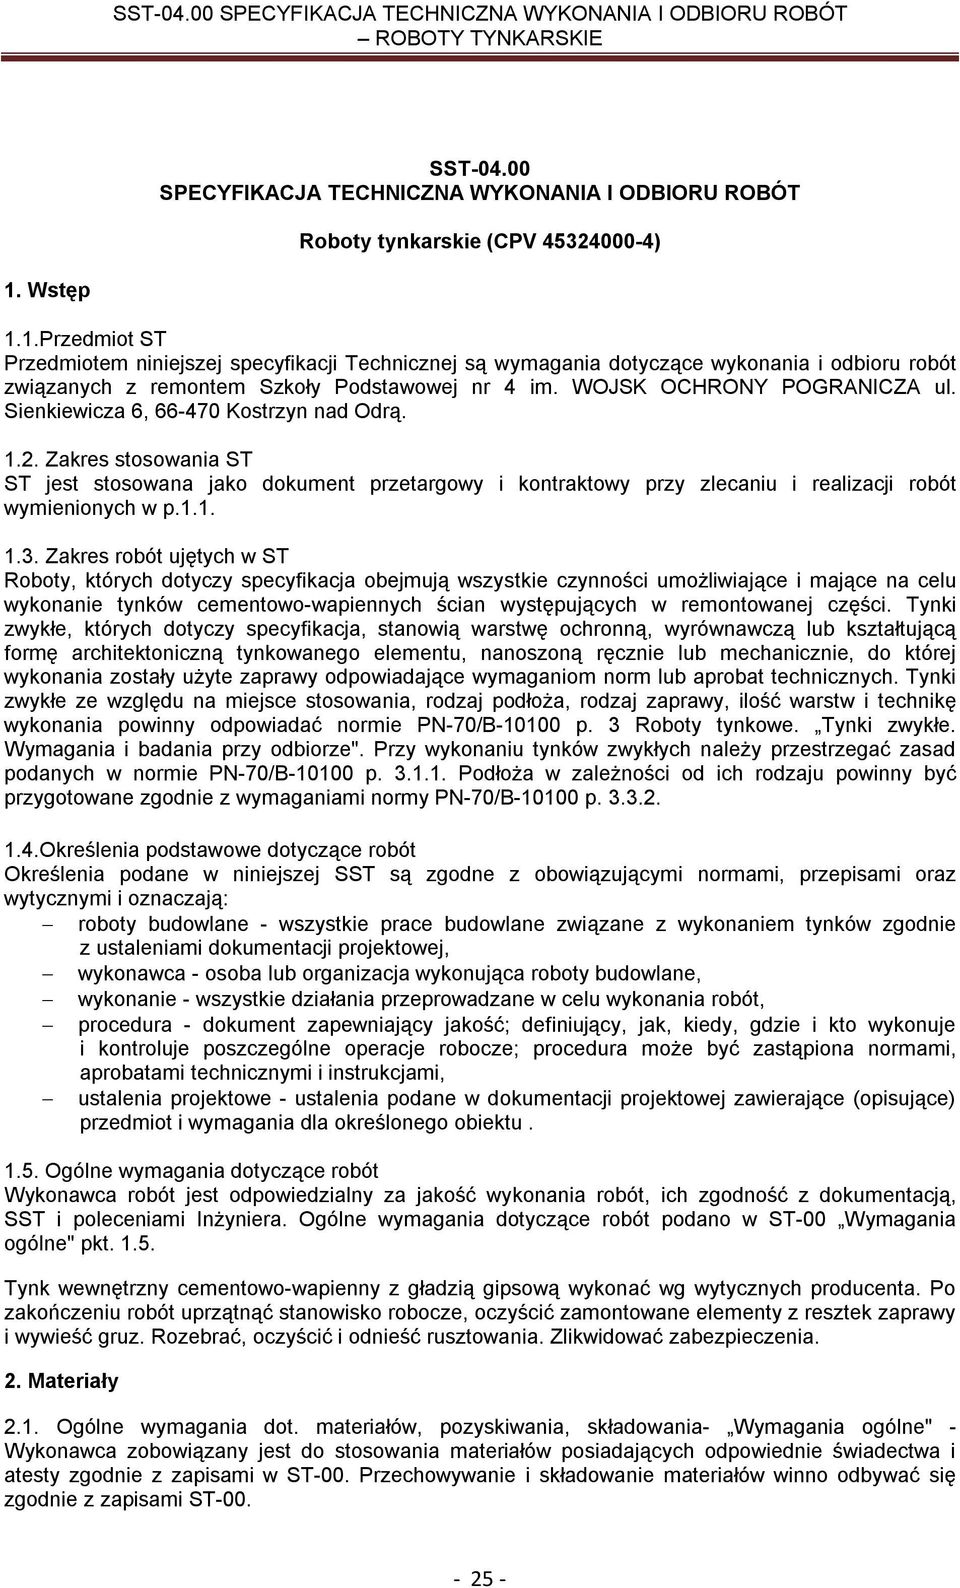 Sienkiewicza 6, 66-470 Kostrzyn nad Odrą. 1.2. Zakres stosowania ST ST jest stosowana jako dokument przetargowy i kontraktowy przy zlecaniu i realizacji robót wymienionych w p.1.1. 1.3.